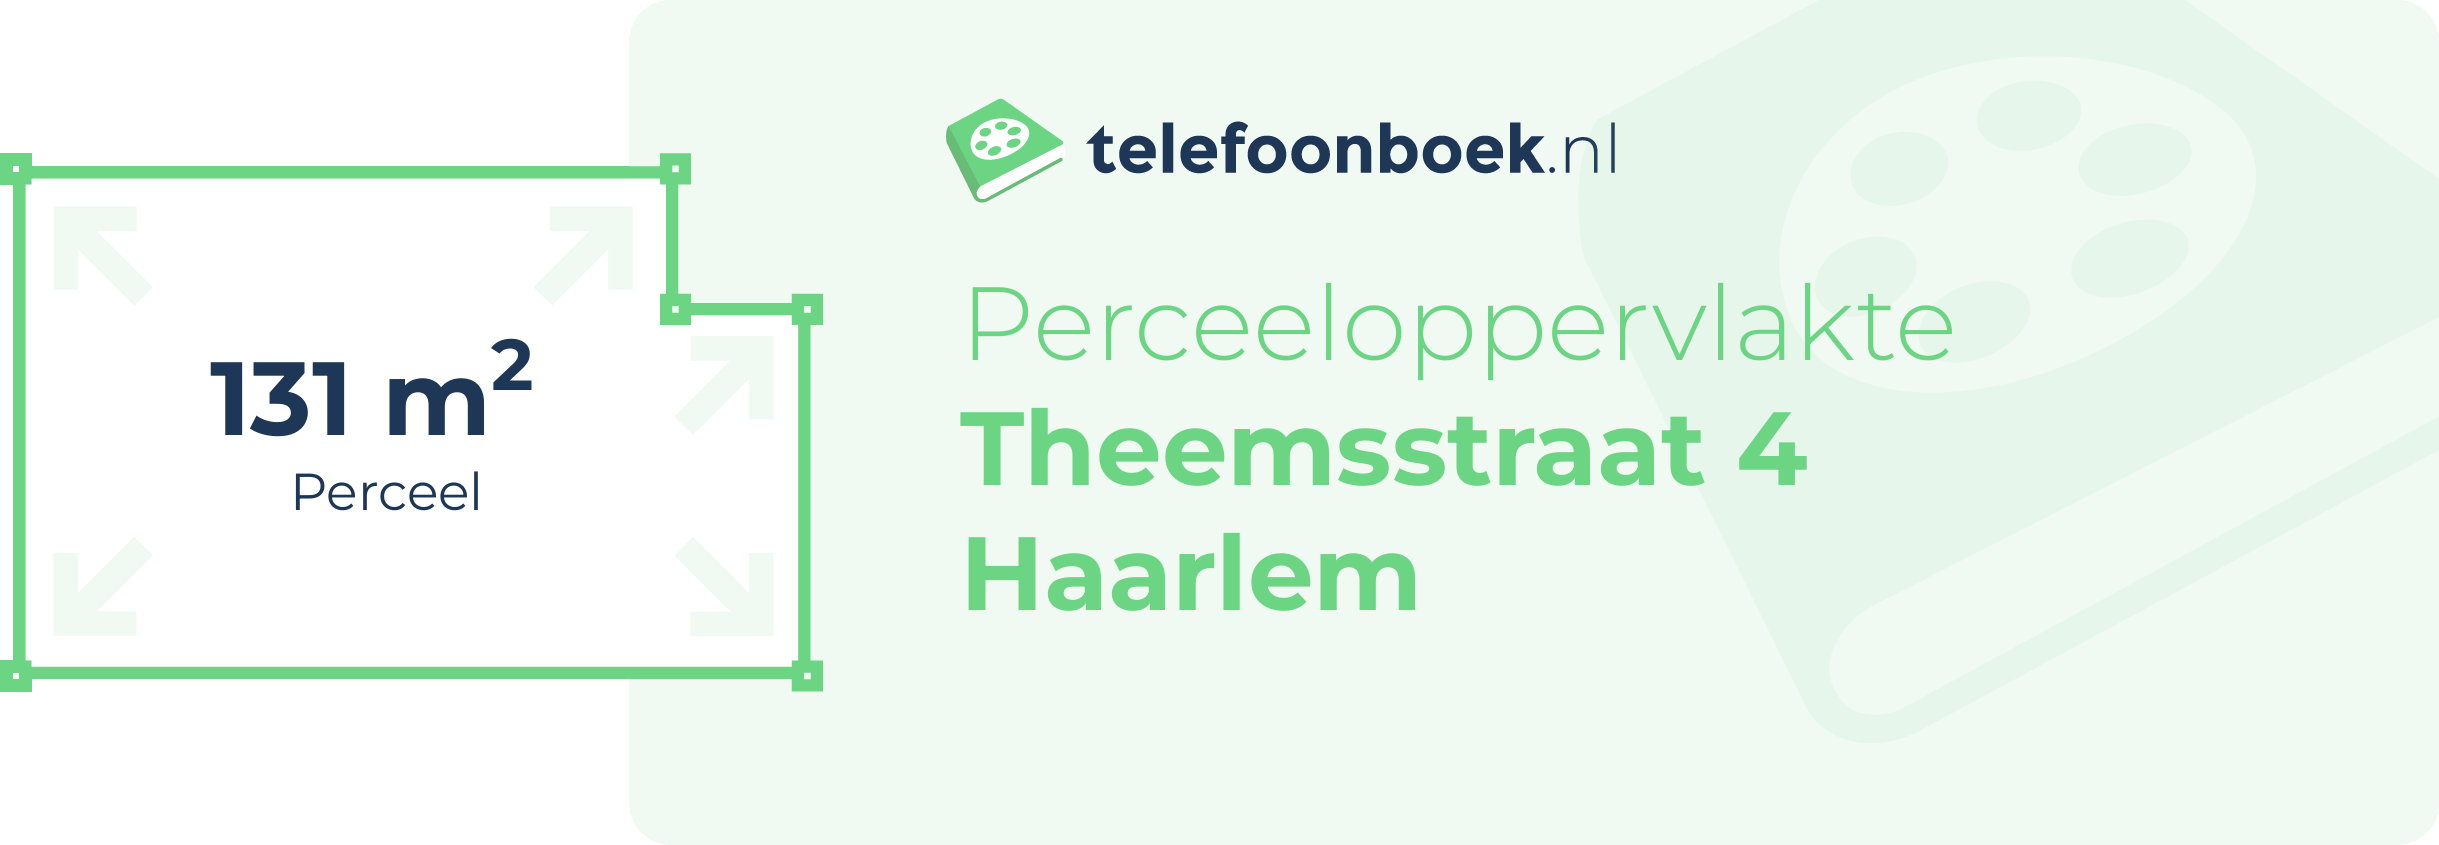 Perceeloppervlakte Theemsstraat 4 Haarlem